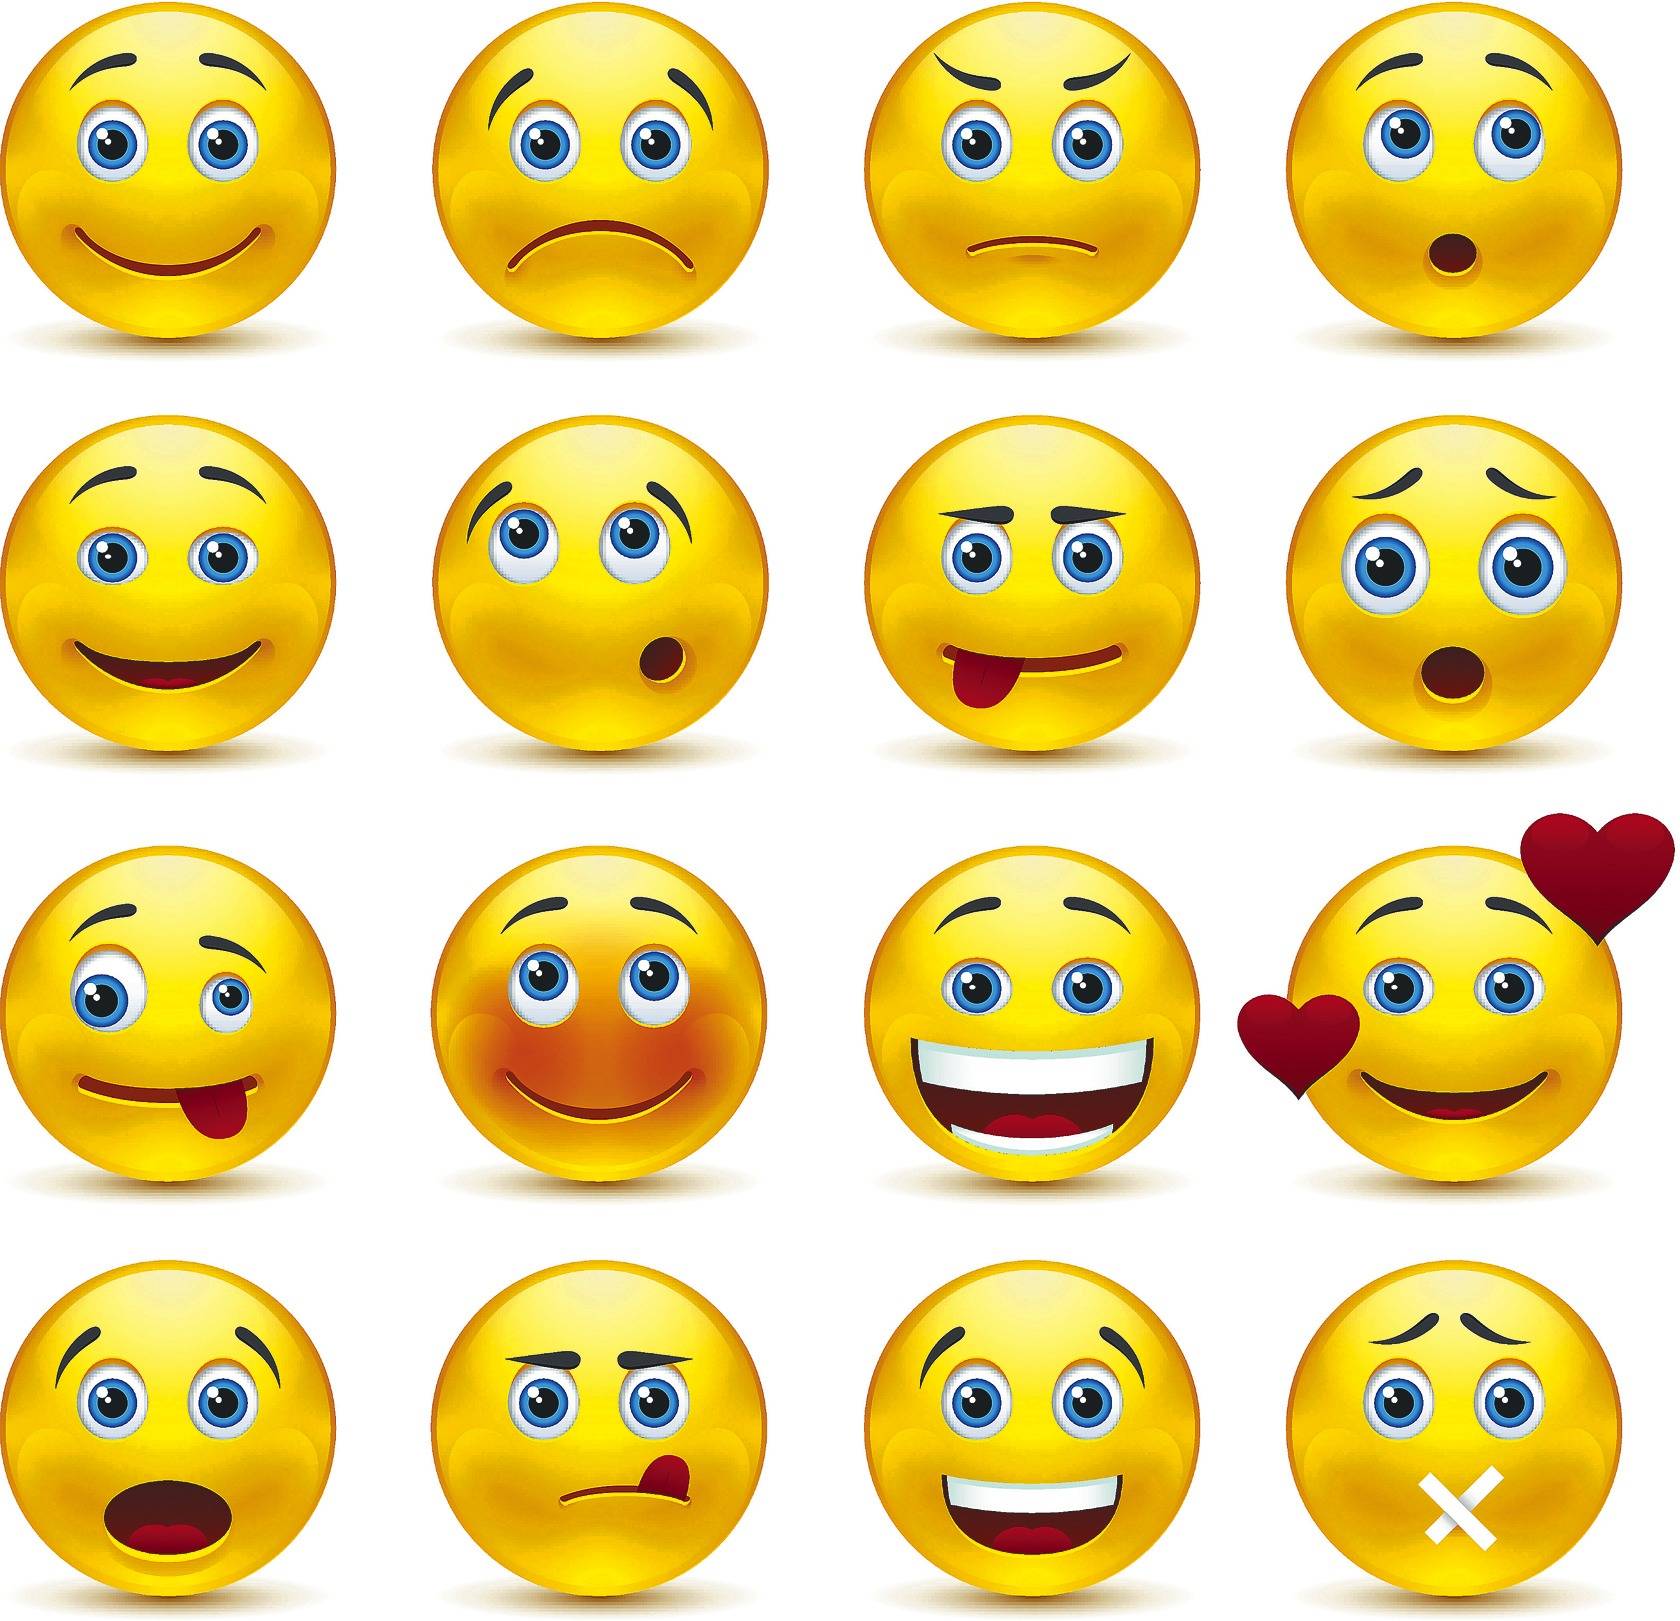 Von sms in bedeutung smileys Emojis: Warum